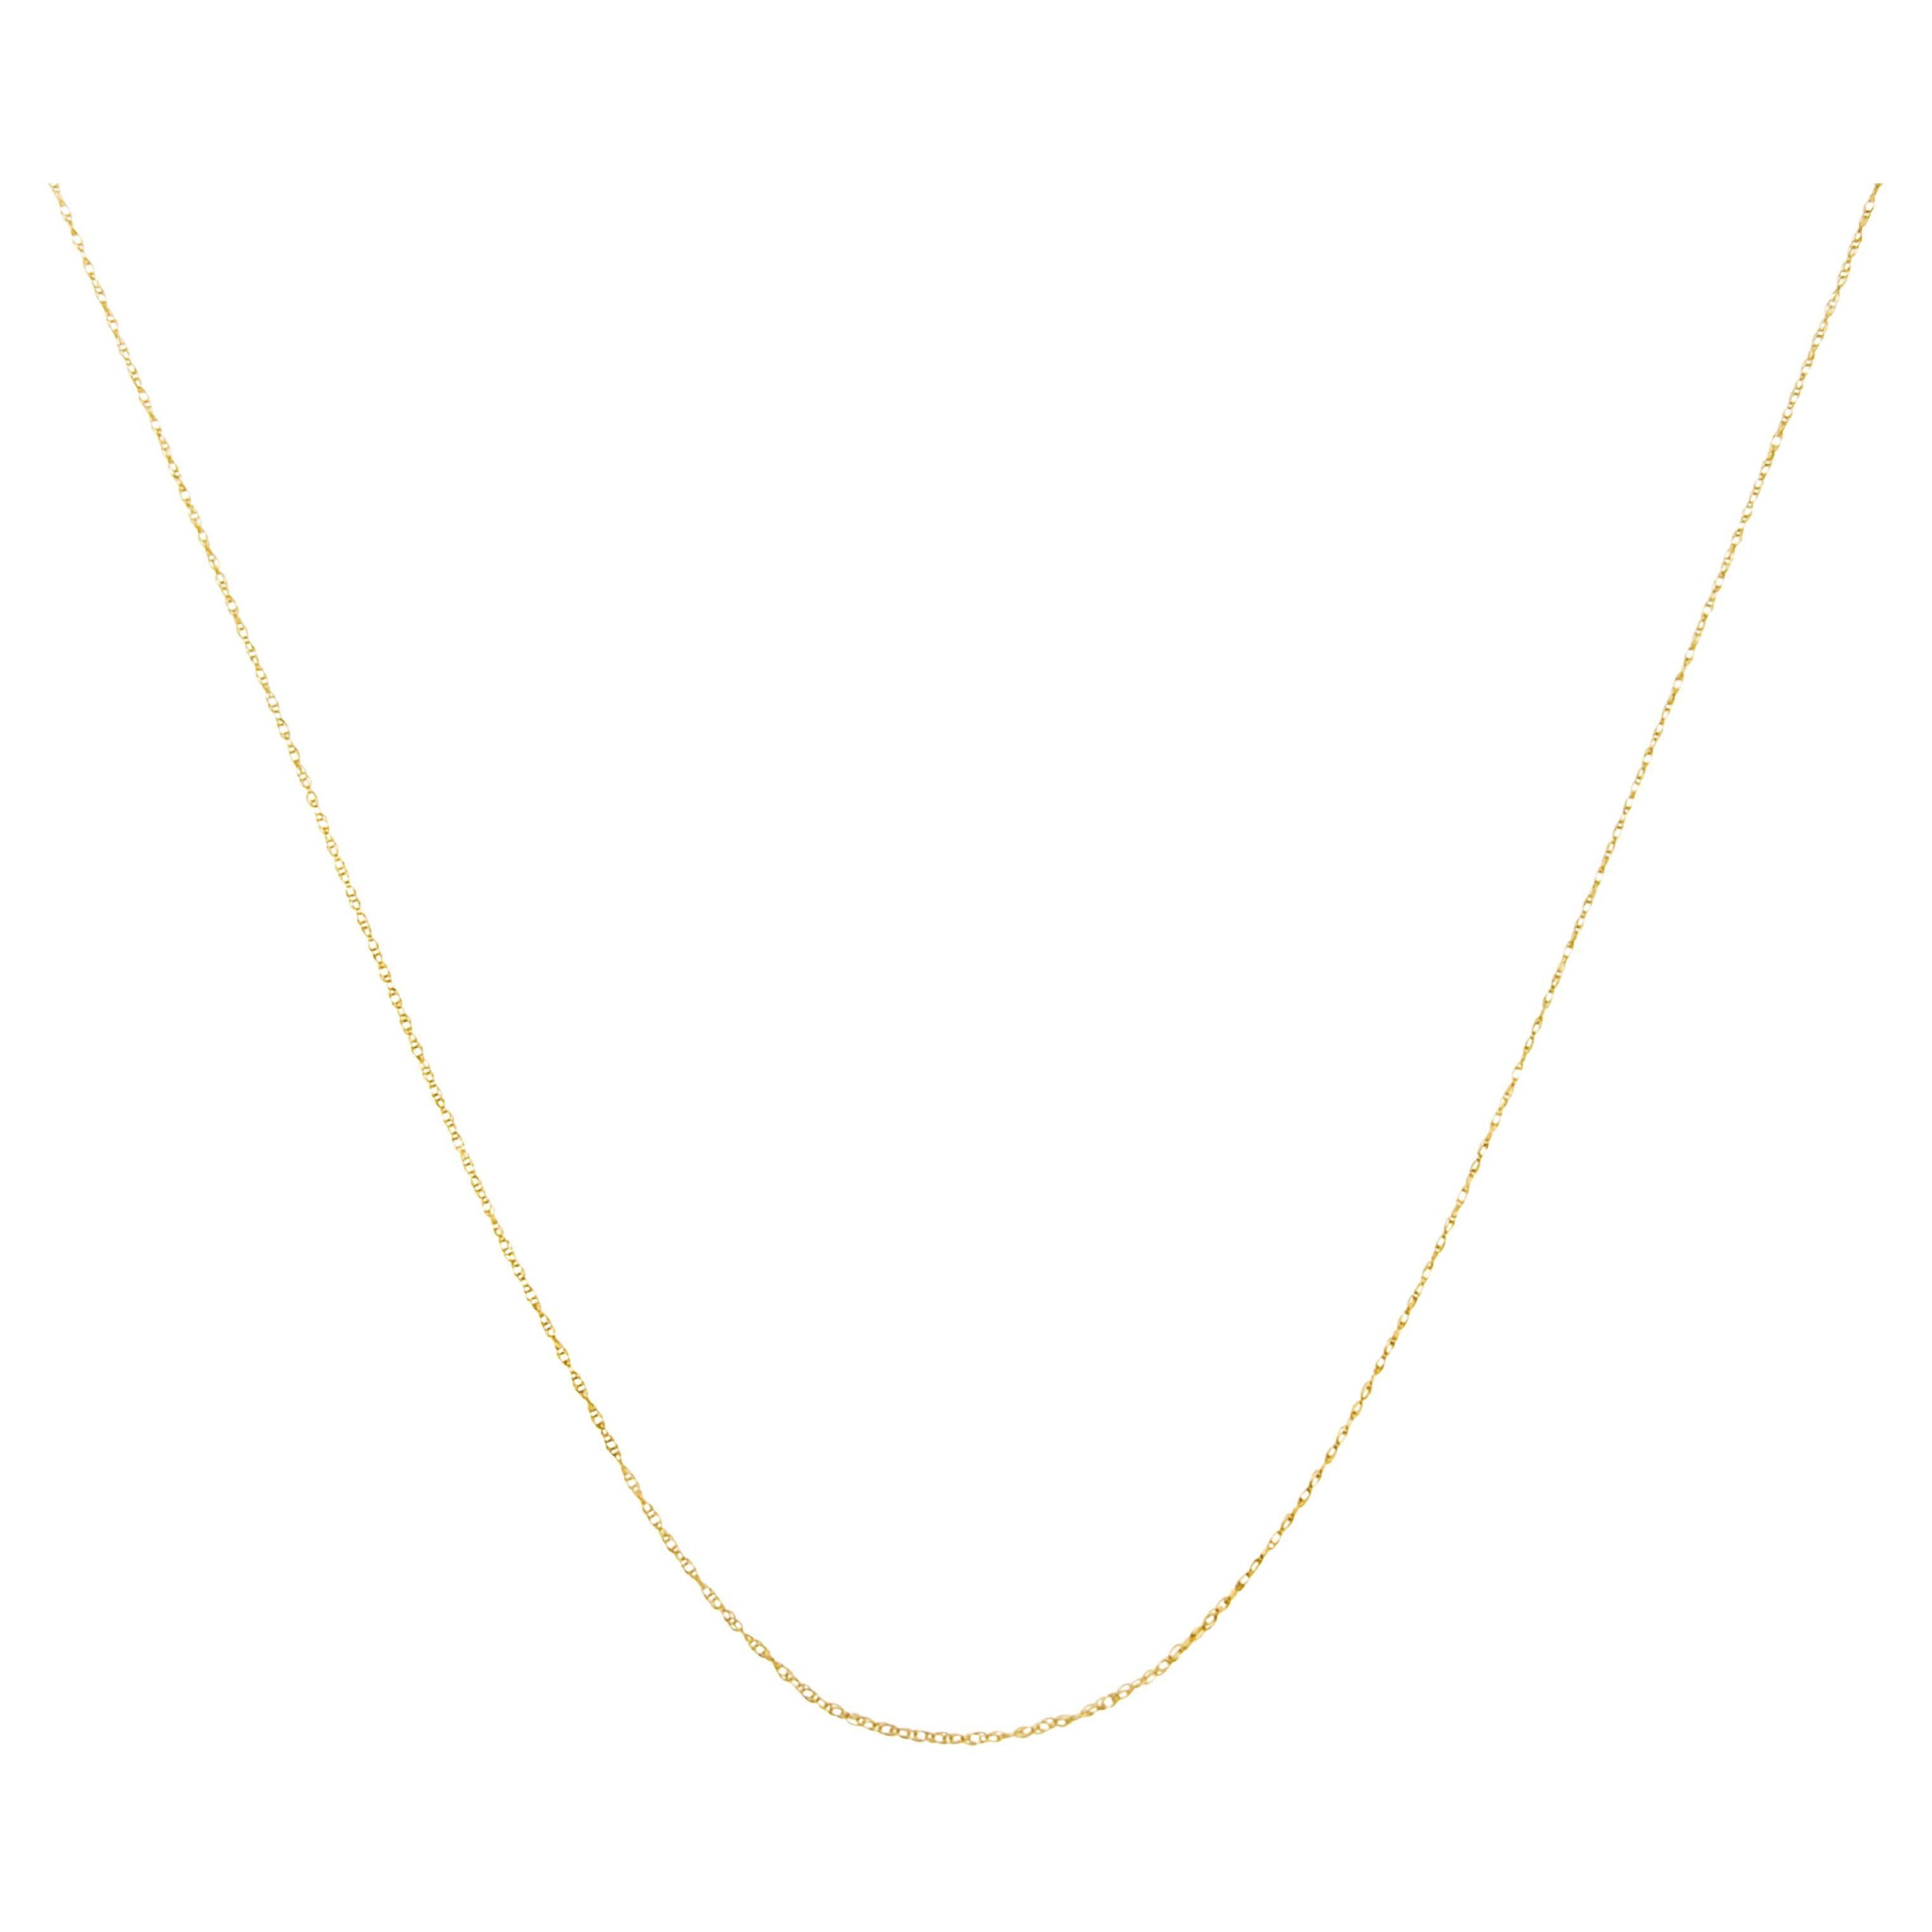 Halskette aus massivem 10K Gelbgold, schlank und reichhaltig, Unisex